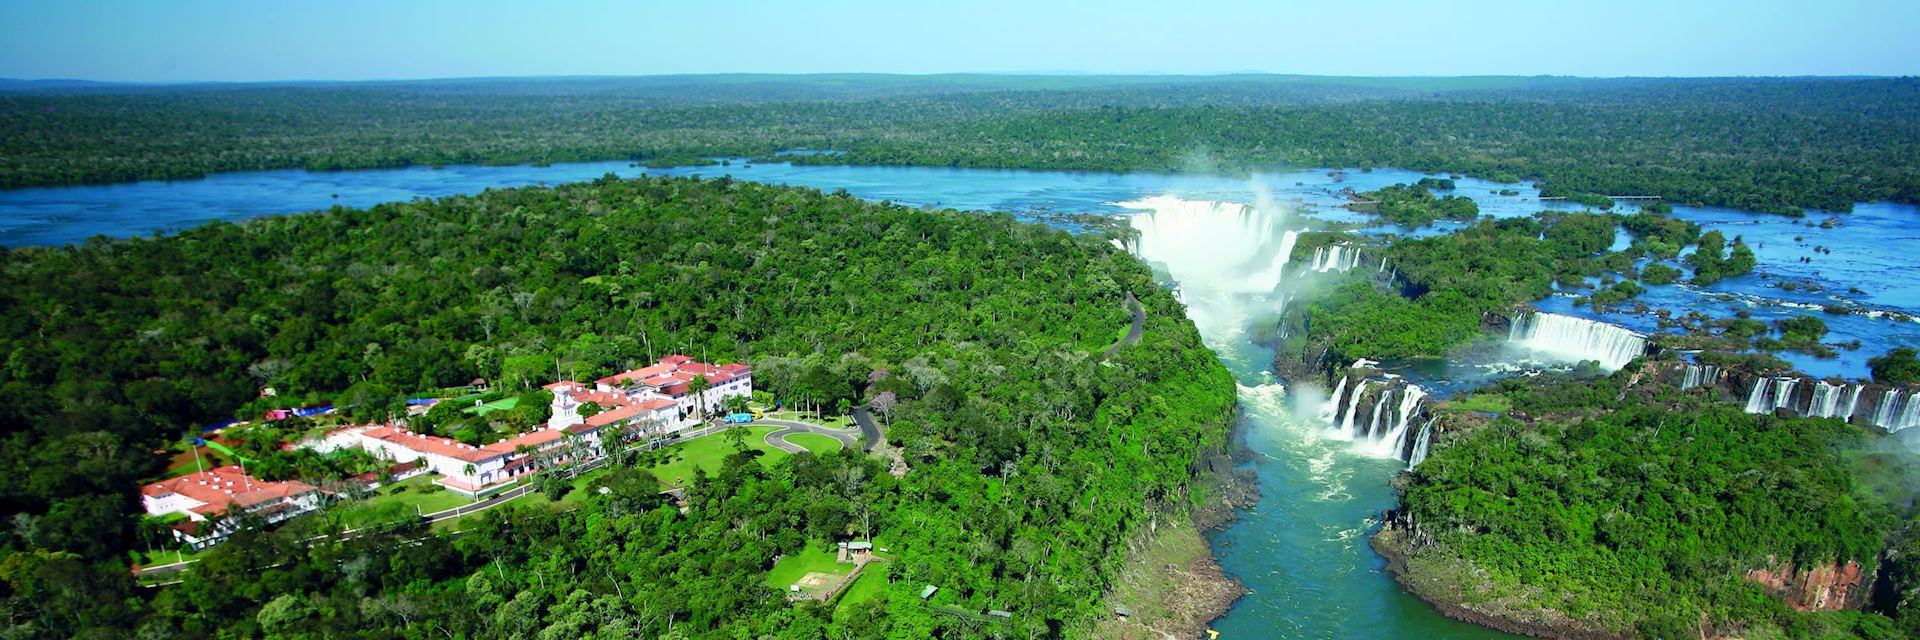 Belmond das Cataratas Hotel, Iguaçu